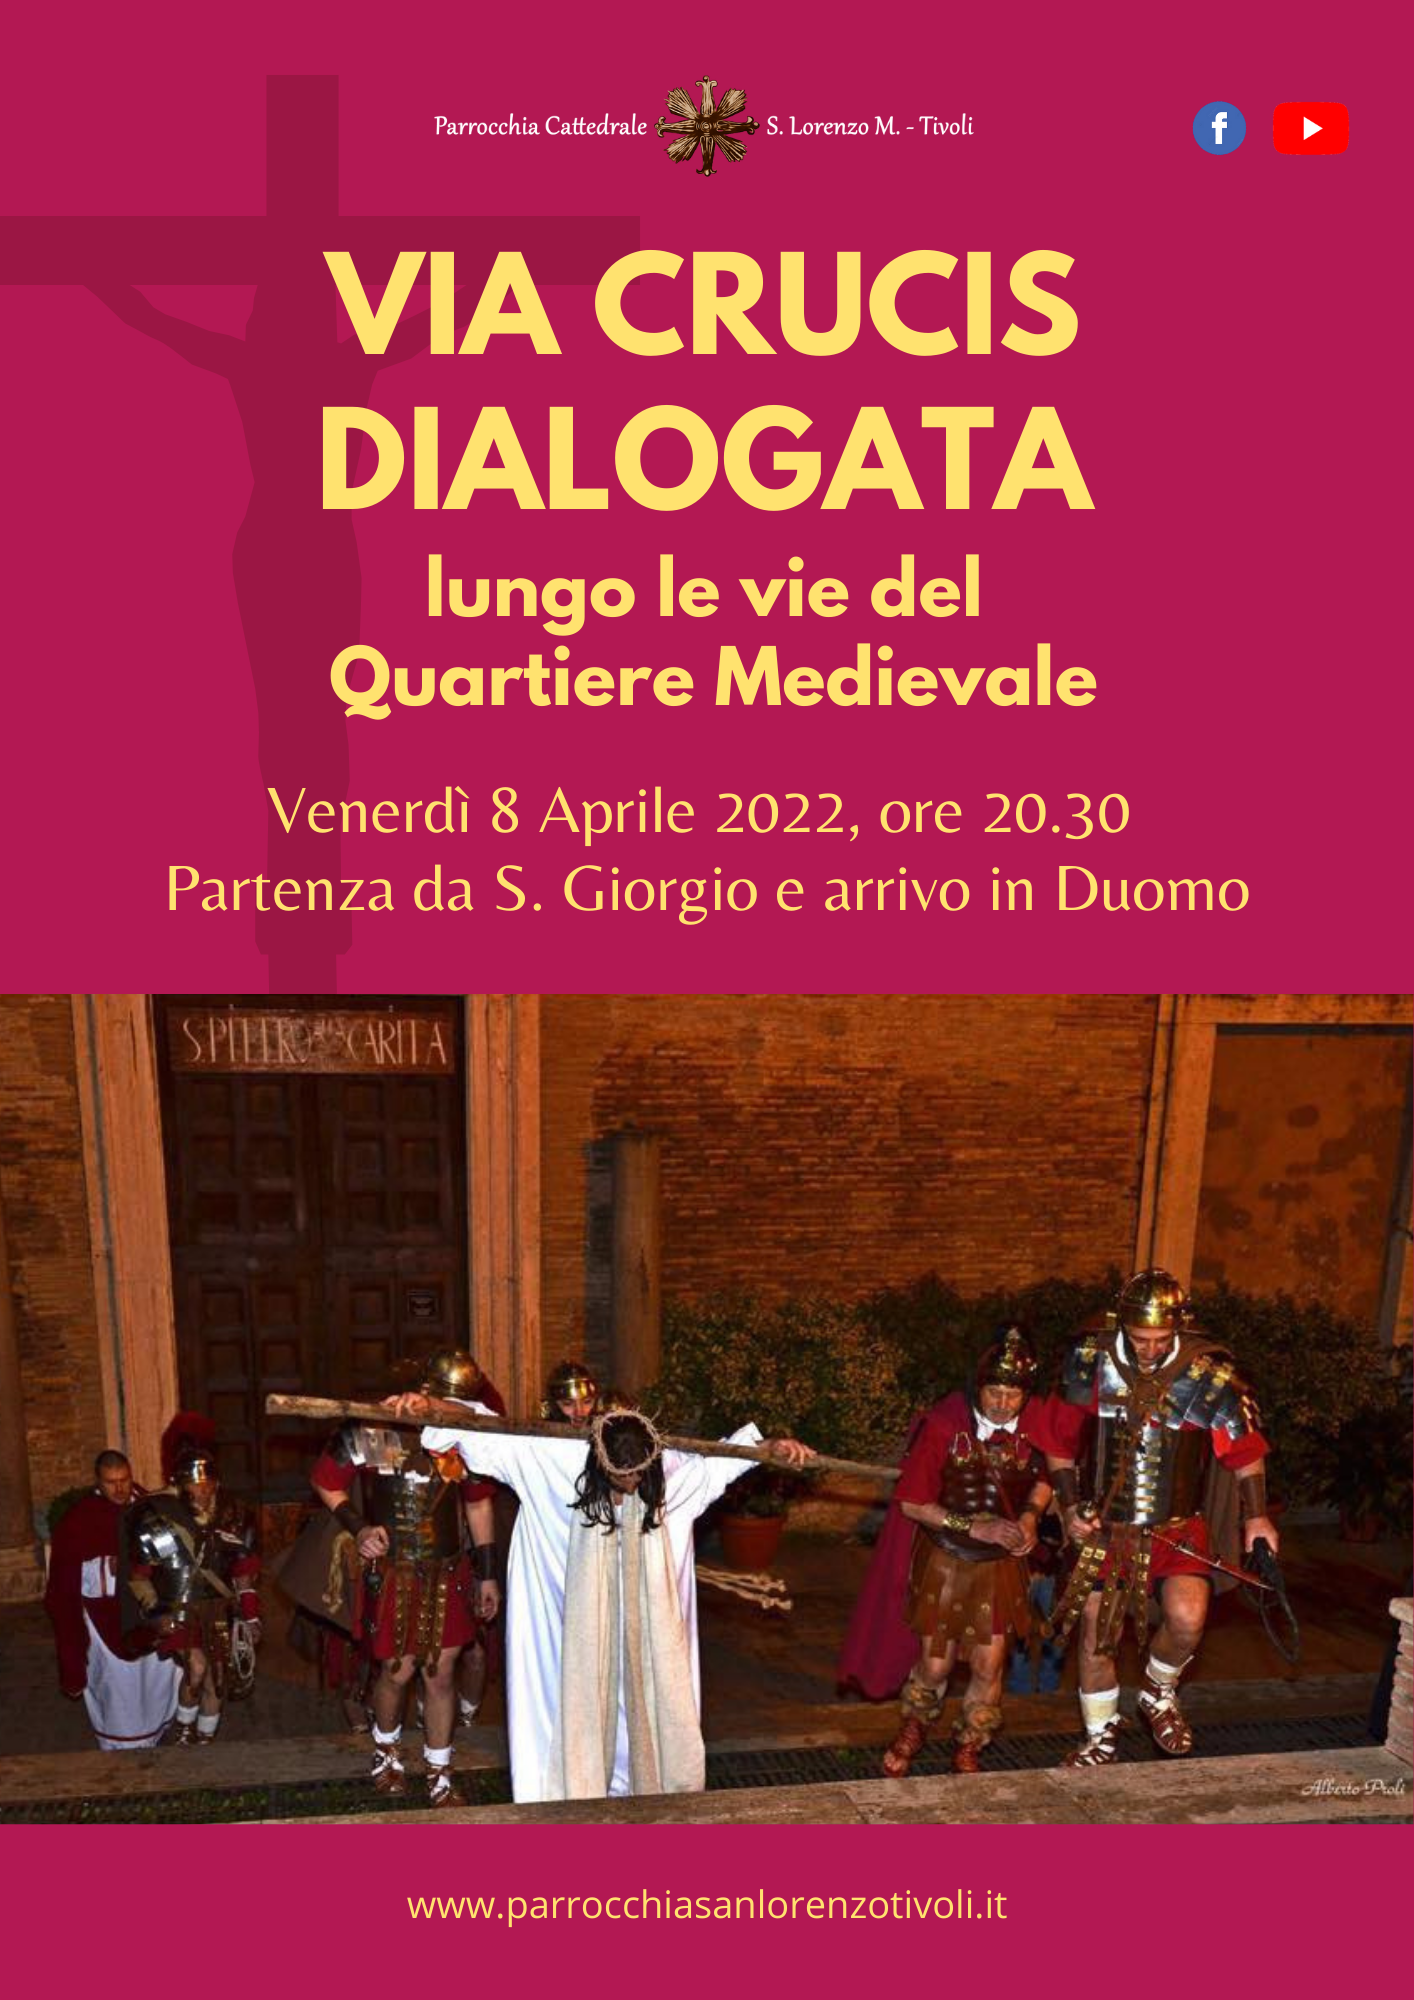 Via Crucis dialogata nel Quartiere medievale l’8 aprile 2022